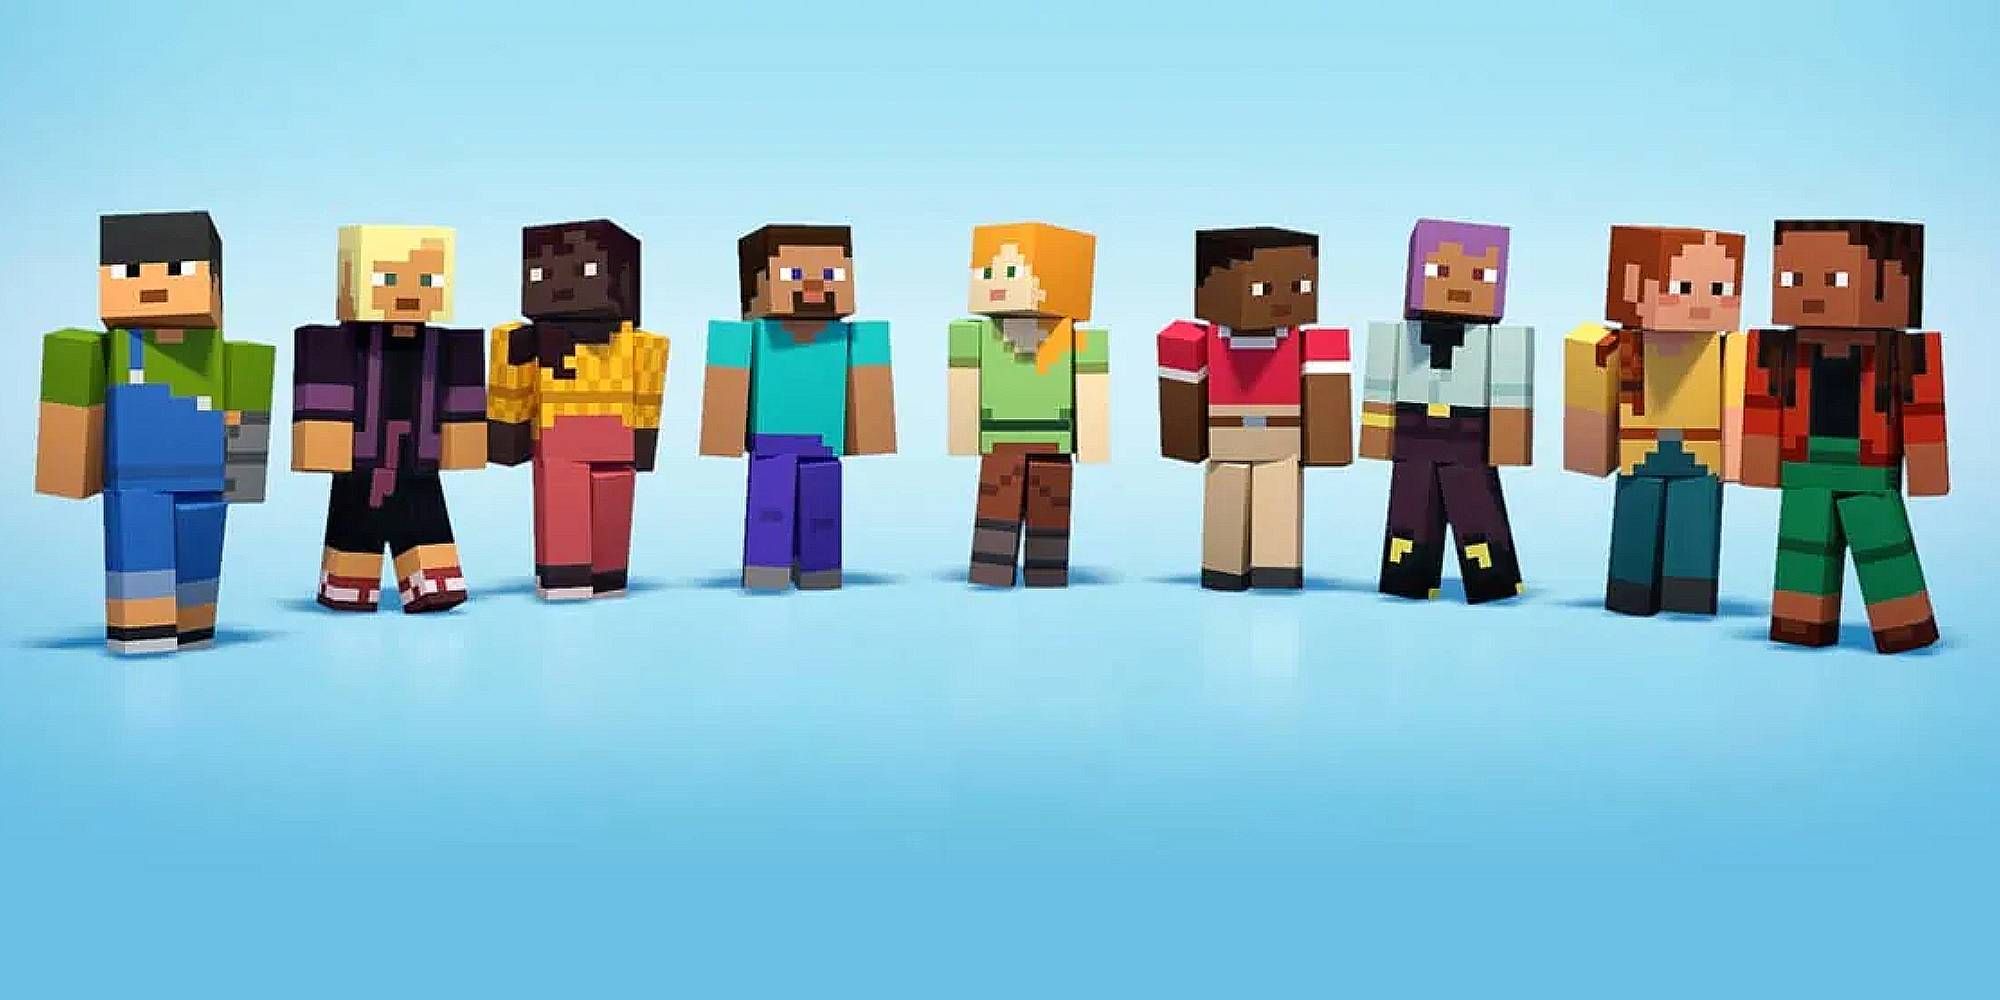 Una gran cantidad de personajes de Minecraft están uno al lado del otro